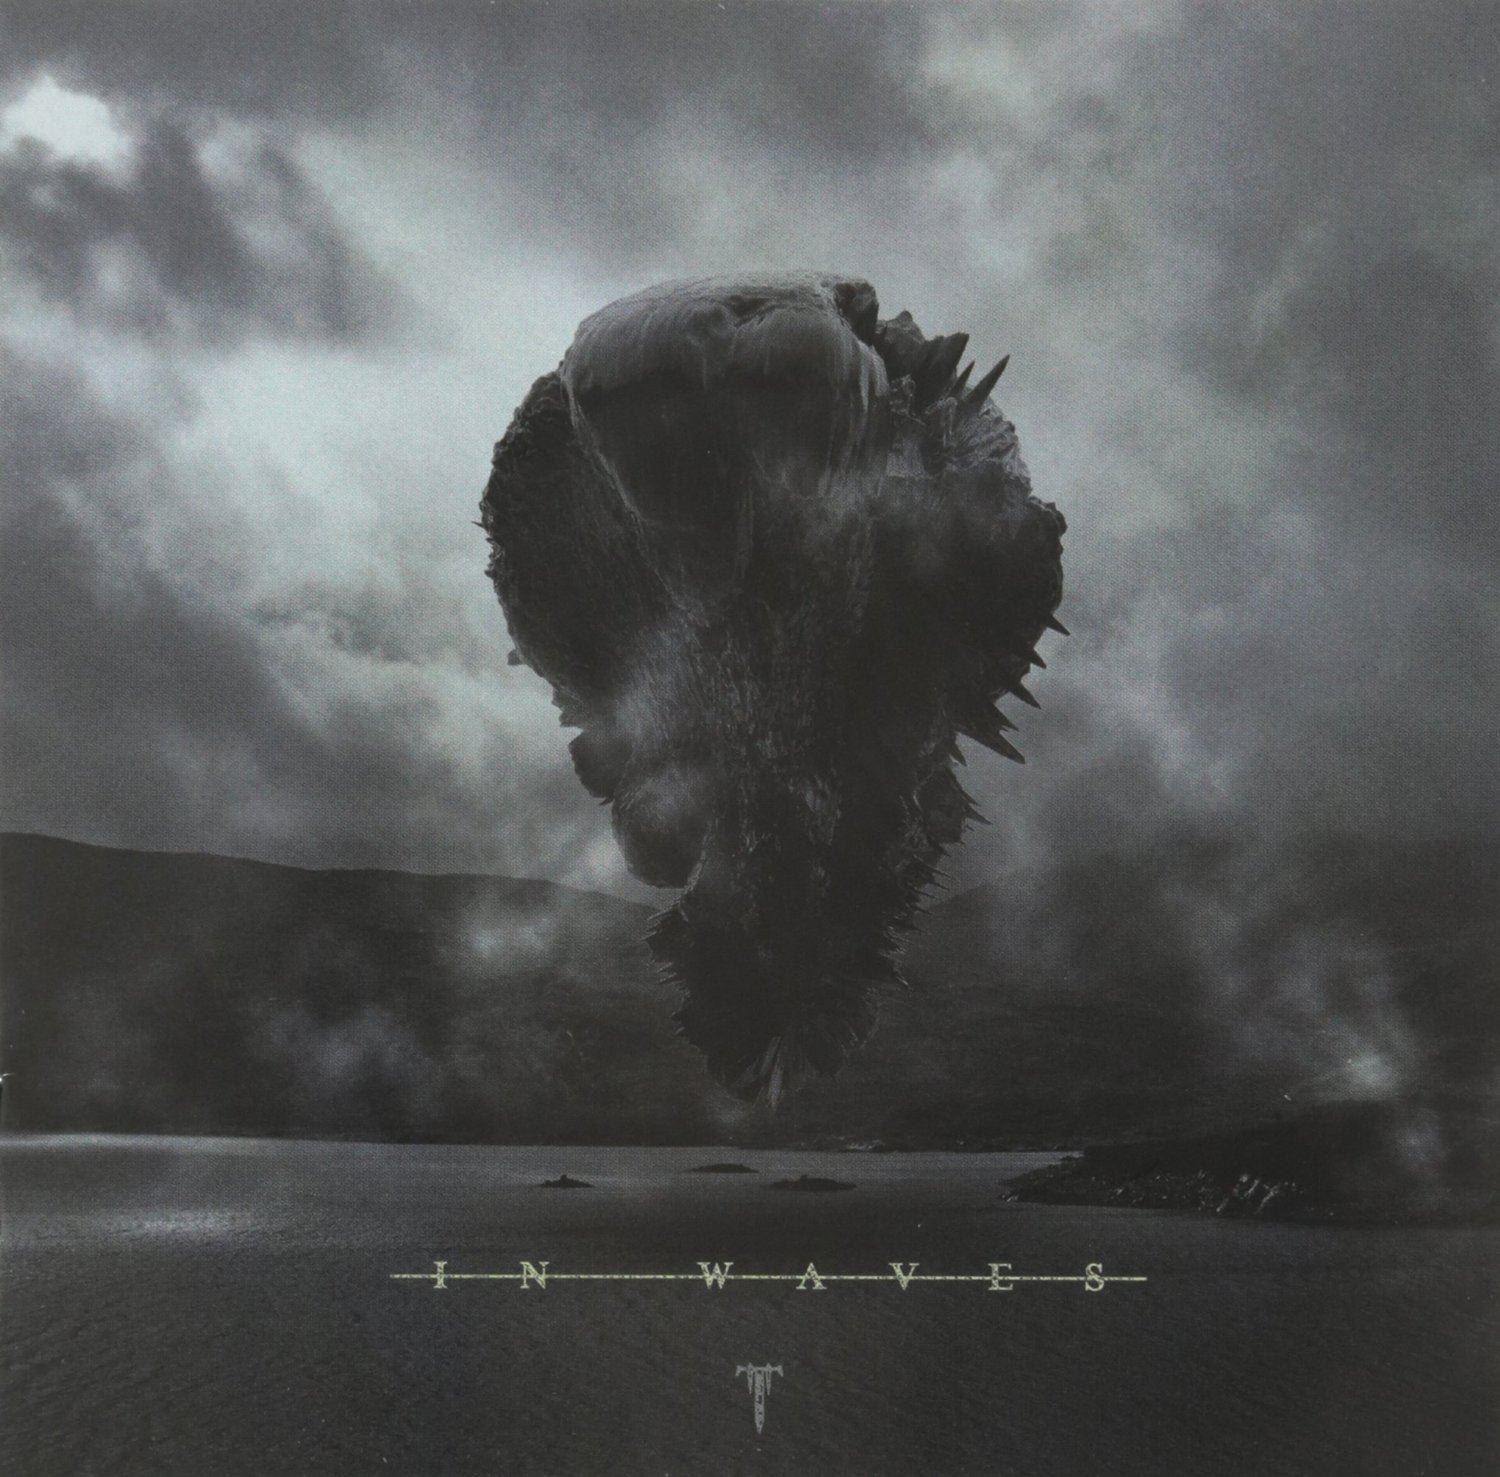 Trivium "In Waves" CD